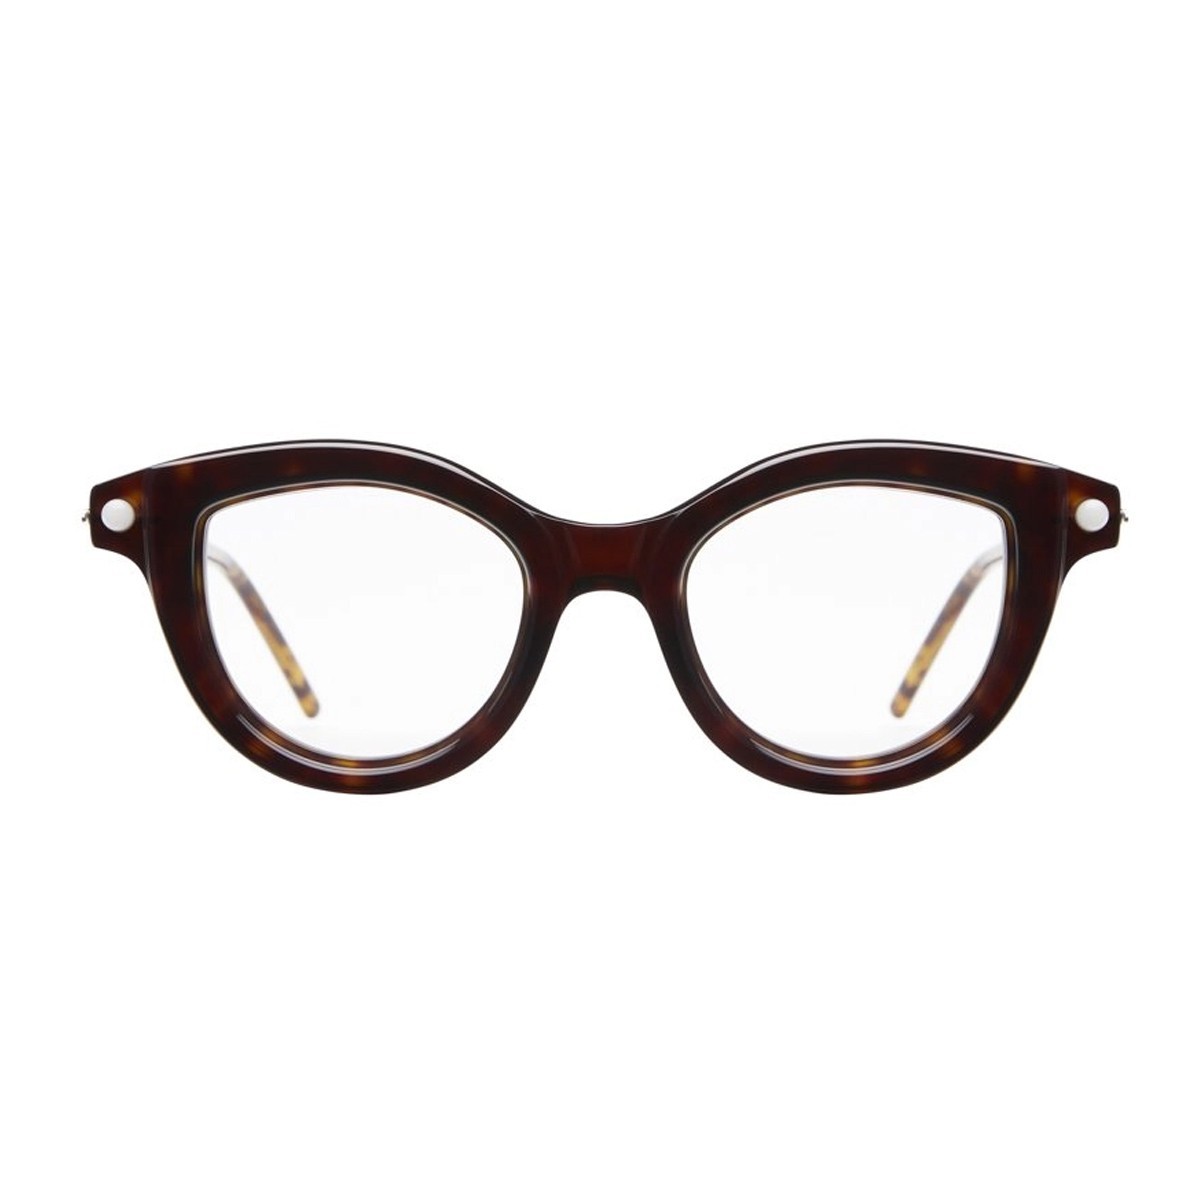 Kuboraum P7 | Women's eyeglasses